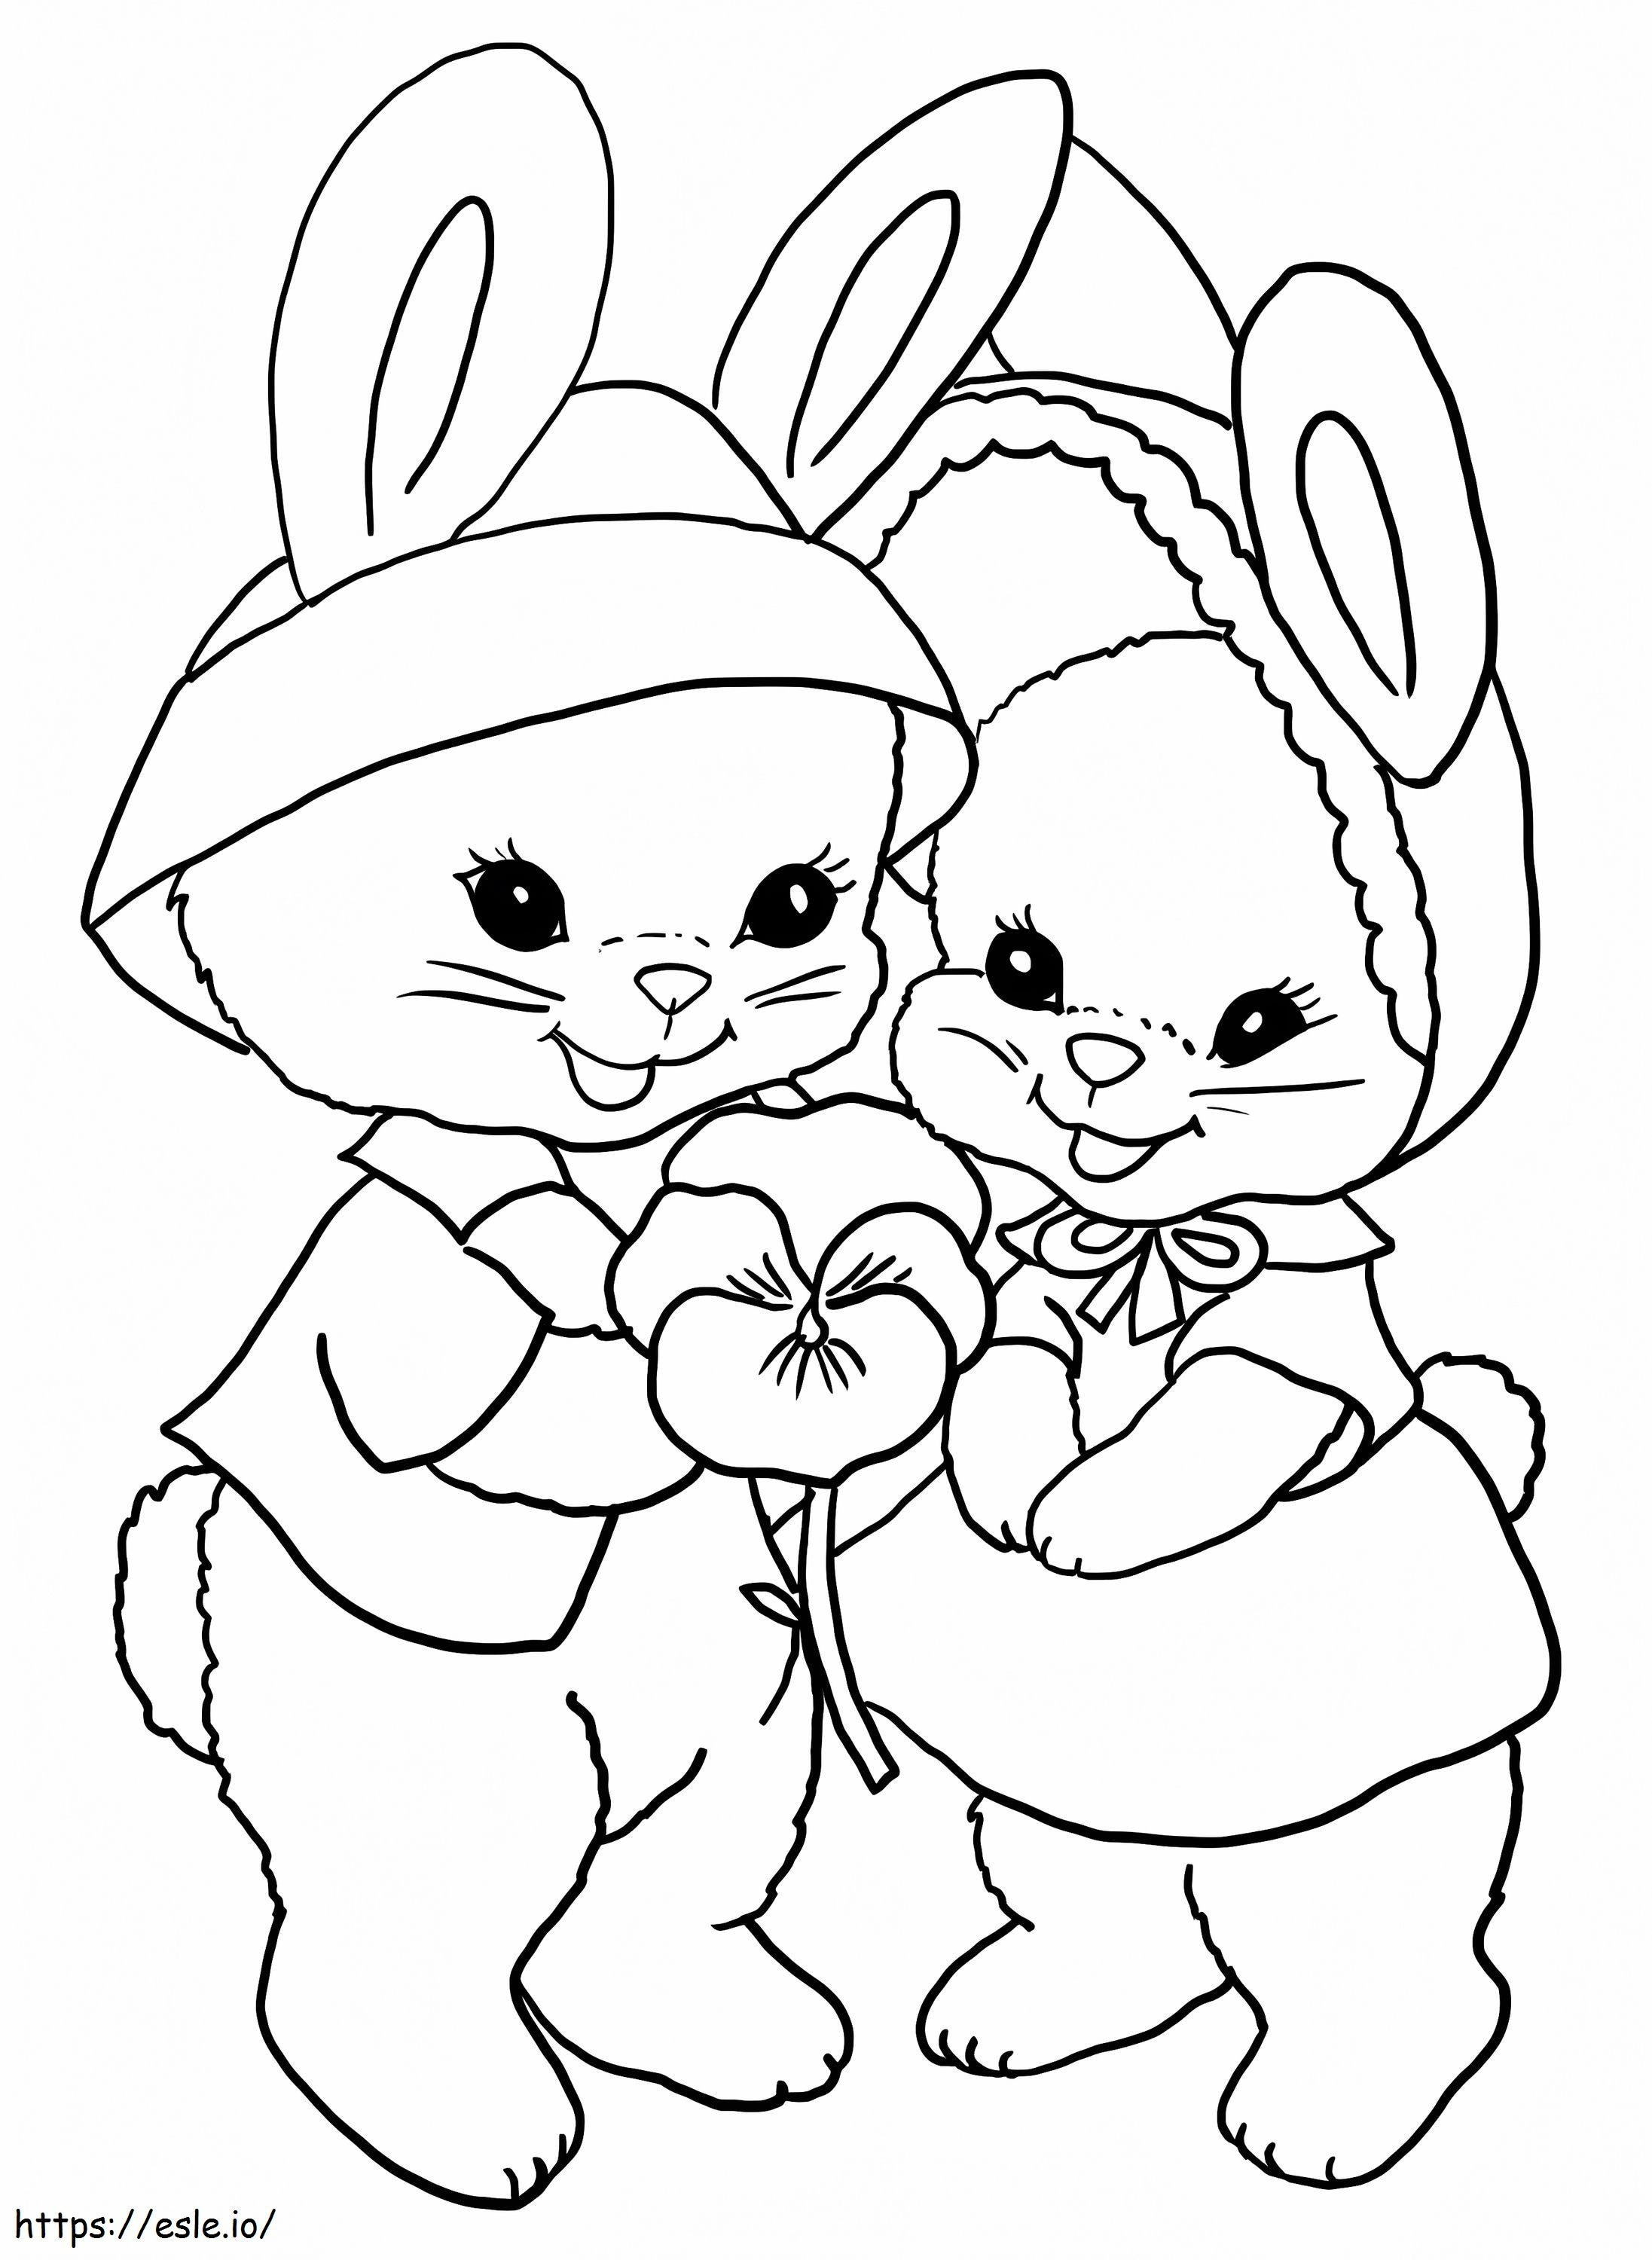 Coelhinhos da Páscoa com flor de amor-perfeito para colorir